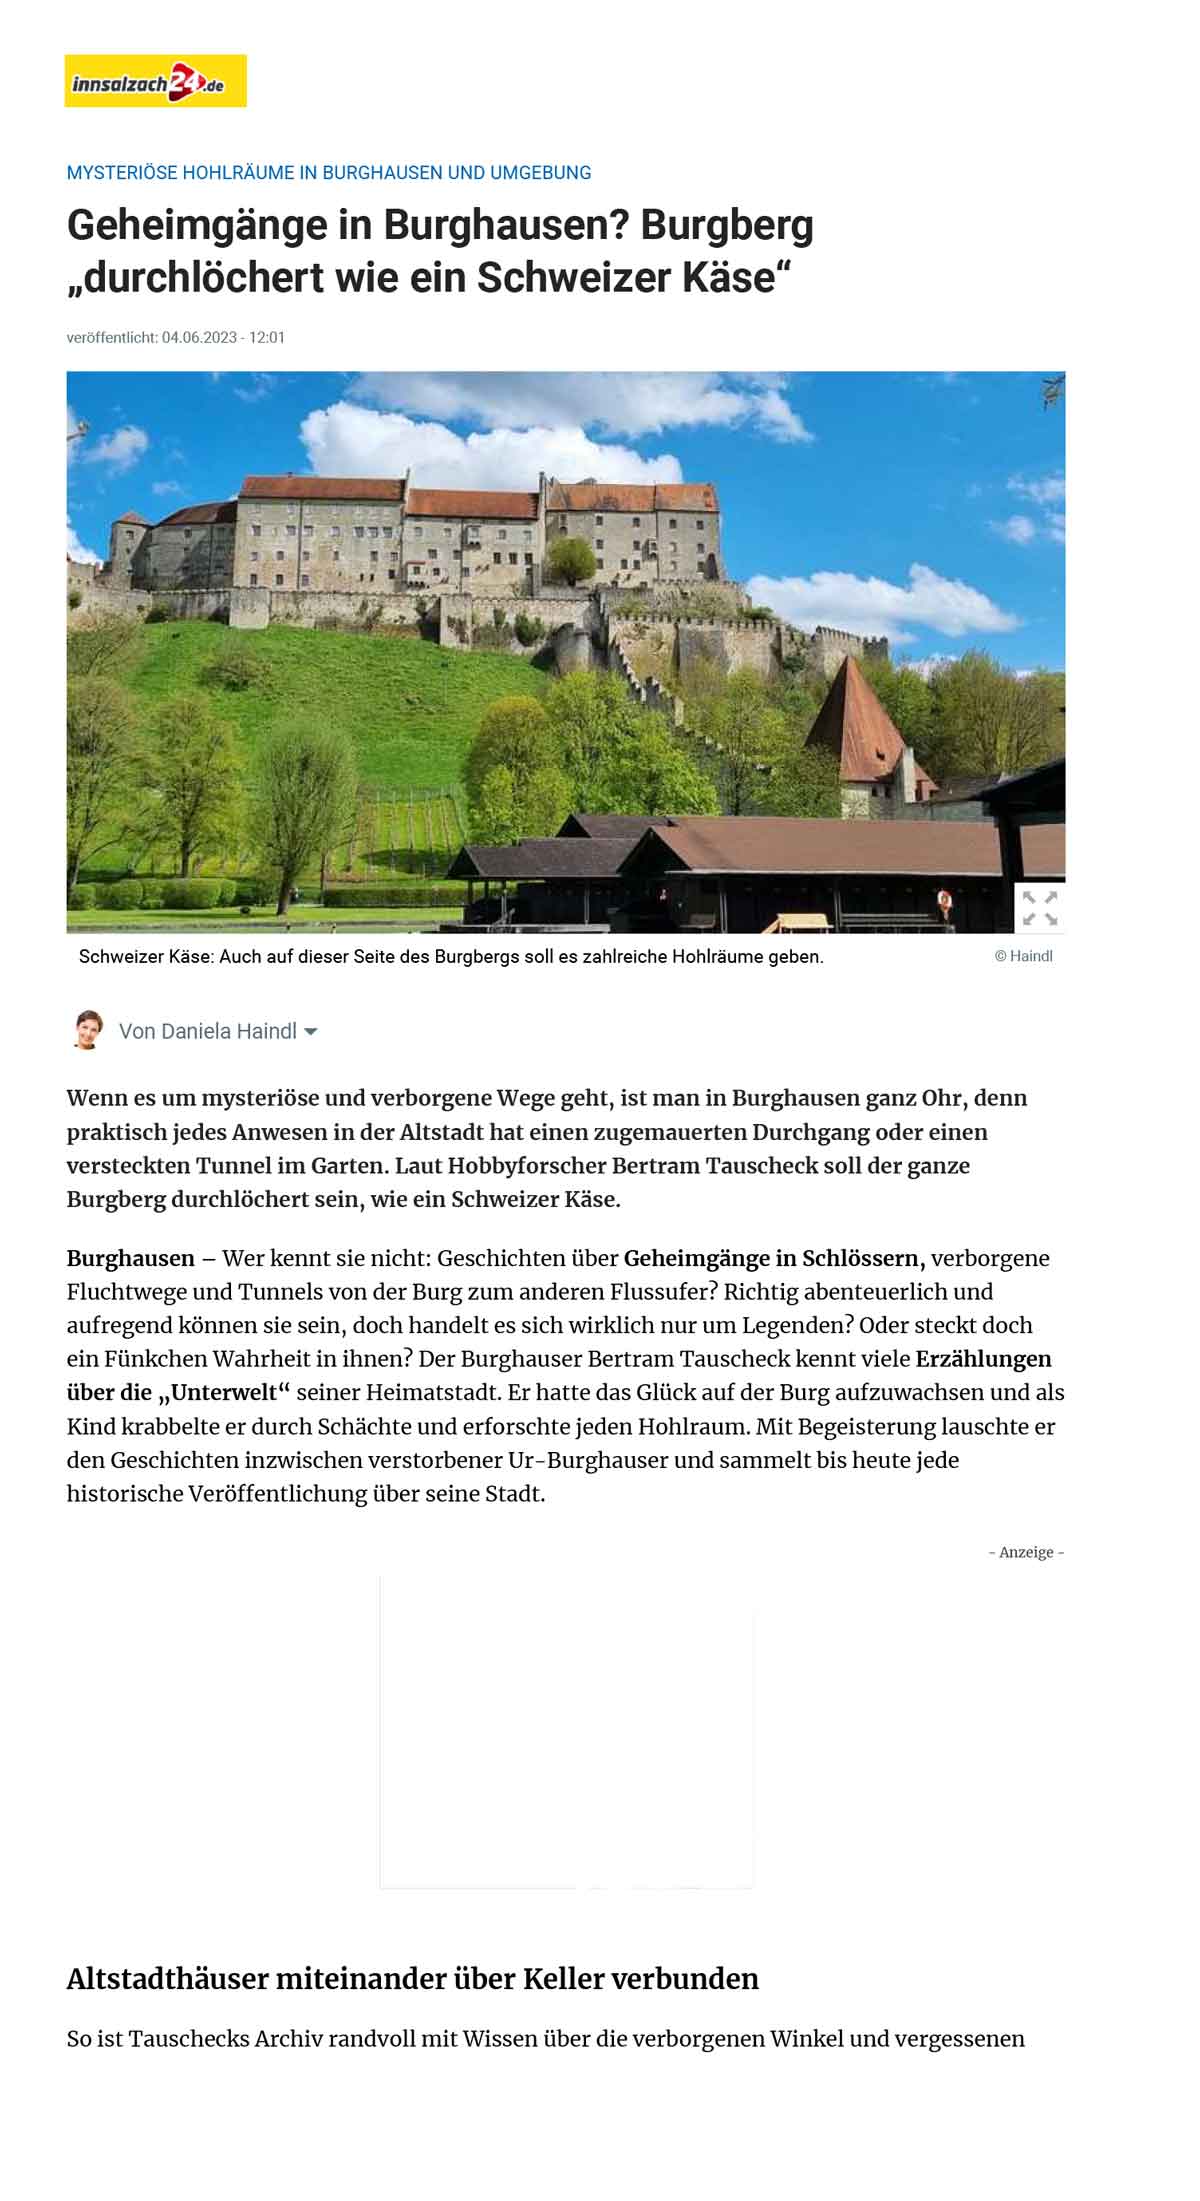 Geheimgänge in Burghausen_ Burgberg durchlöchert wie ein Schweizer Käse